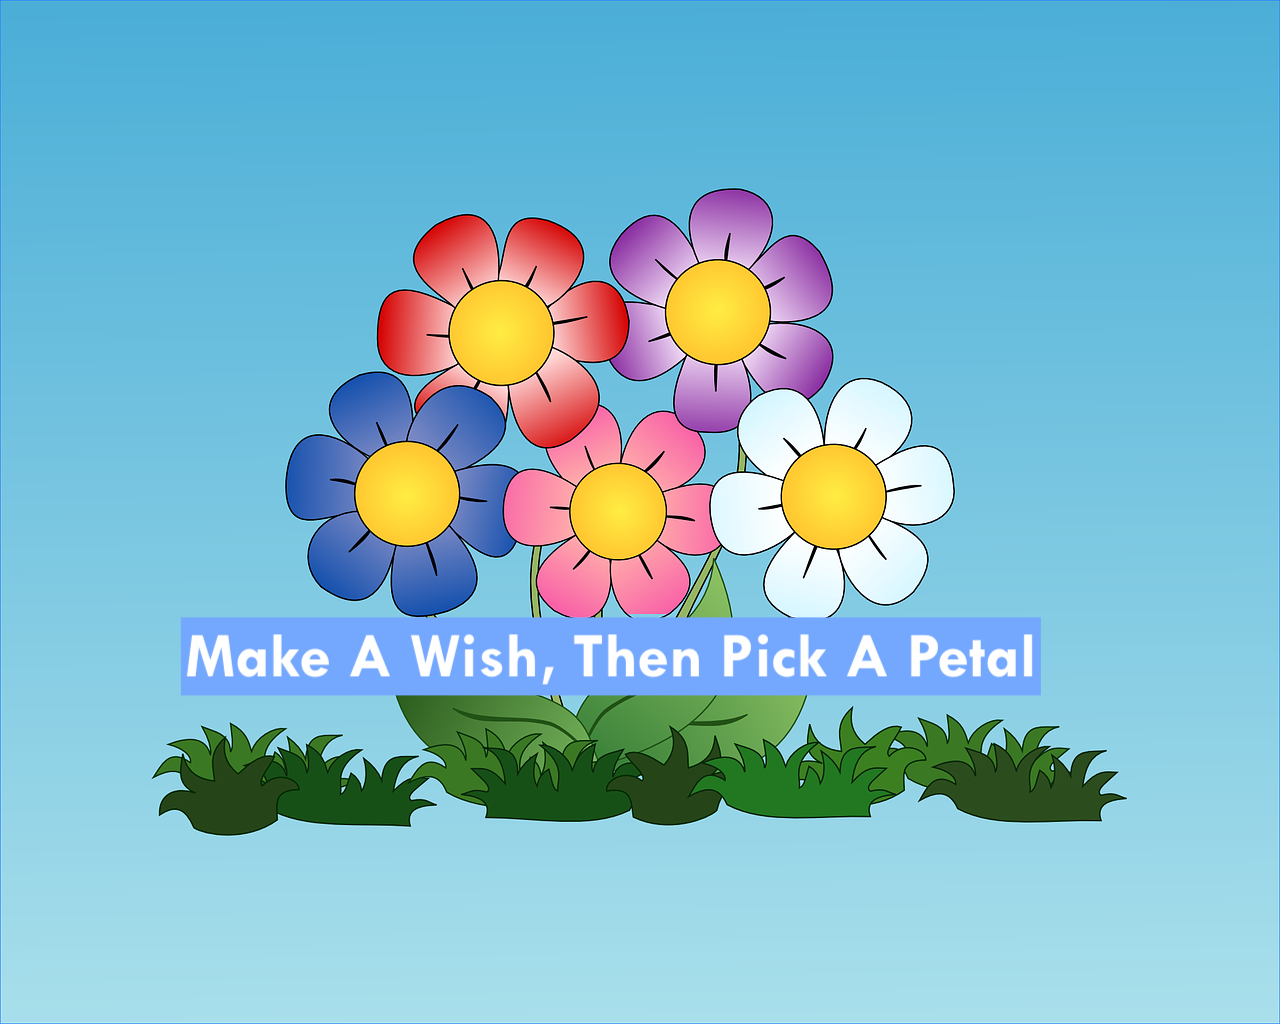 Make A Wish, Then Pick A Petal!